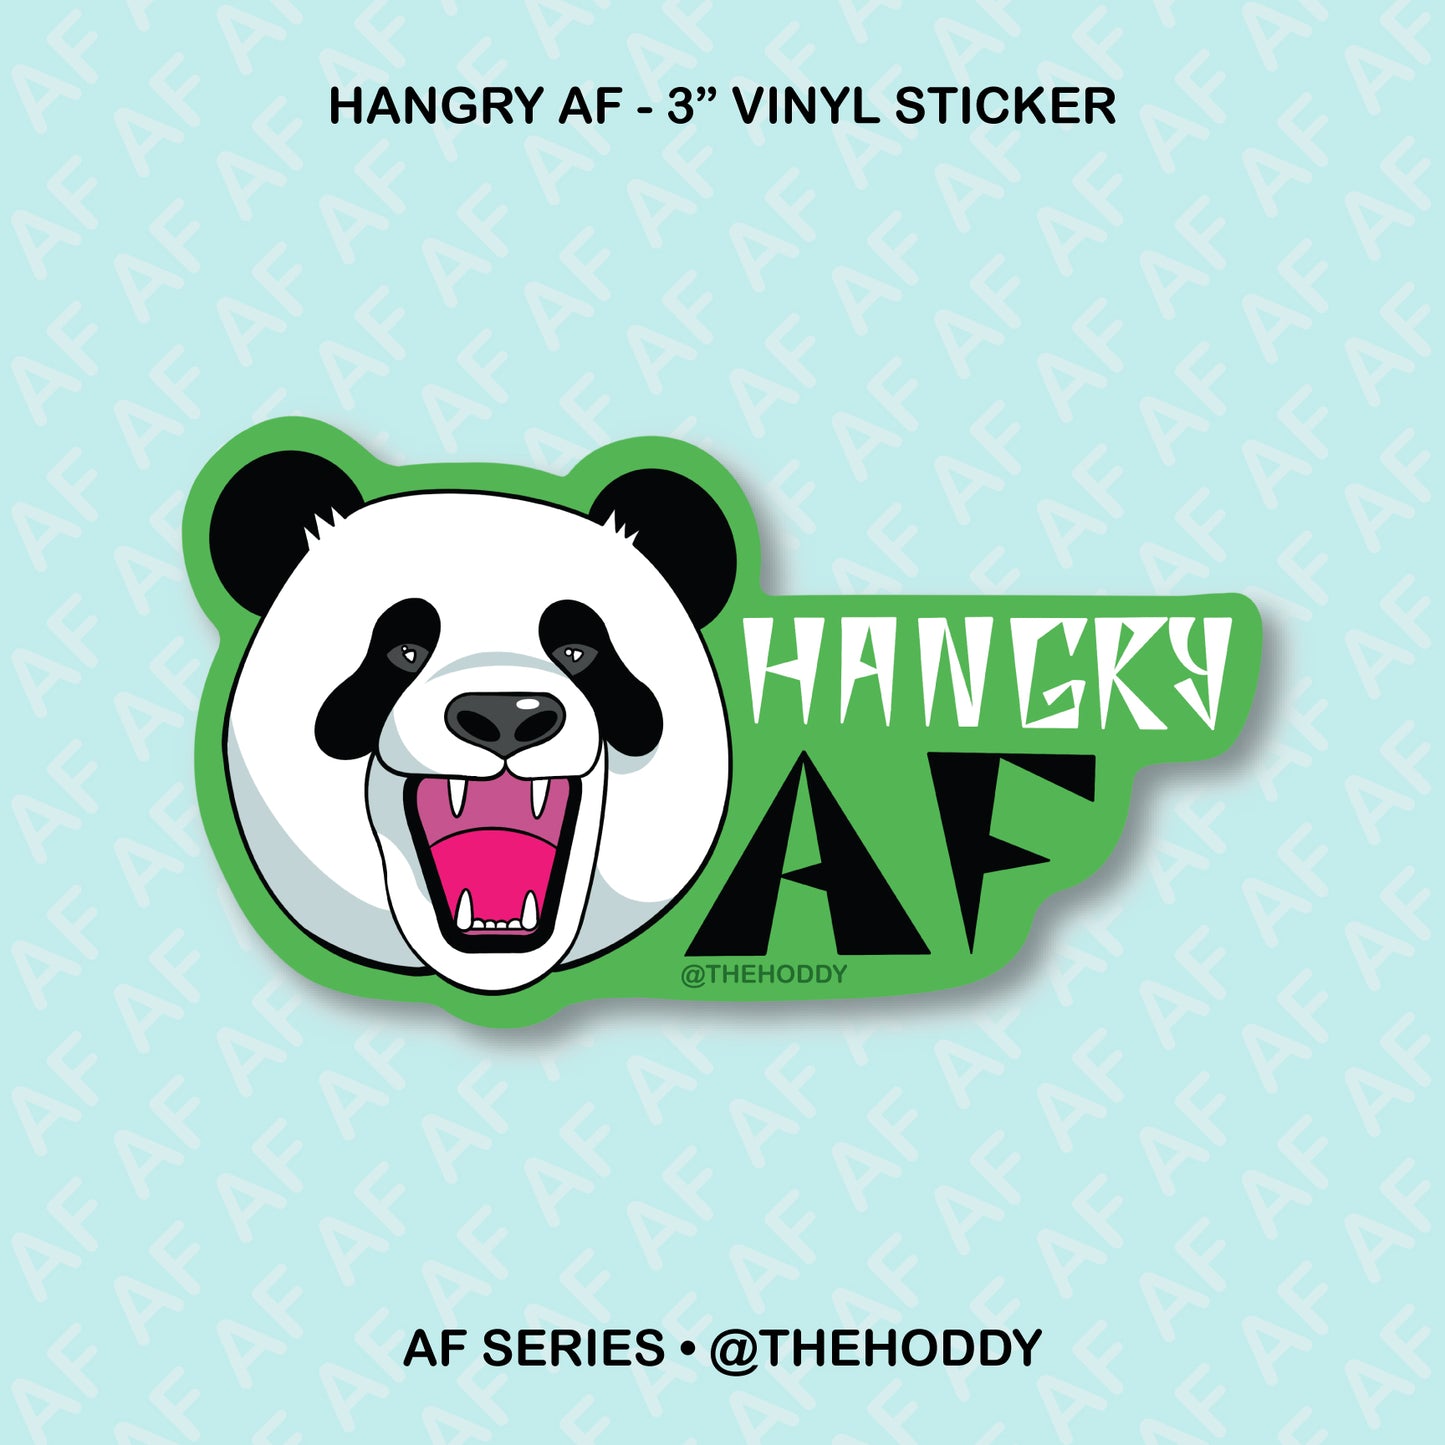 Hangry AF - 3" Vinyl Sticker